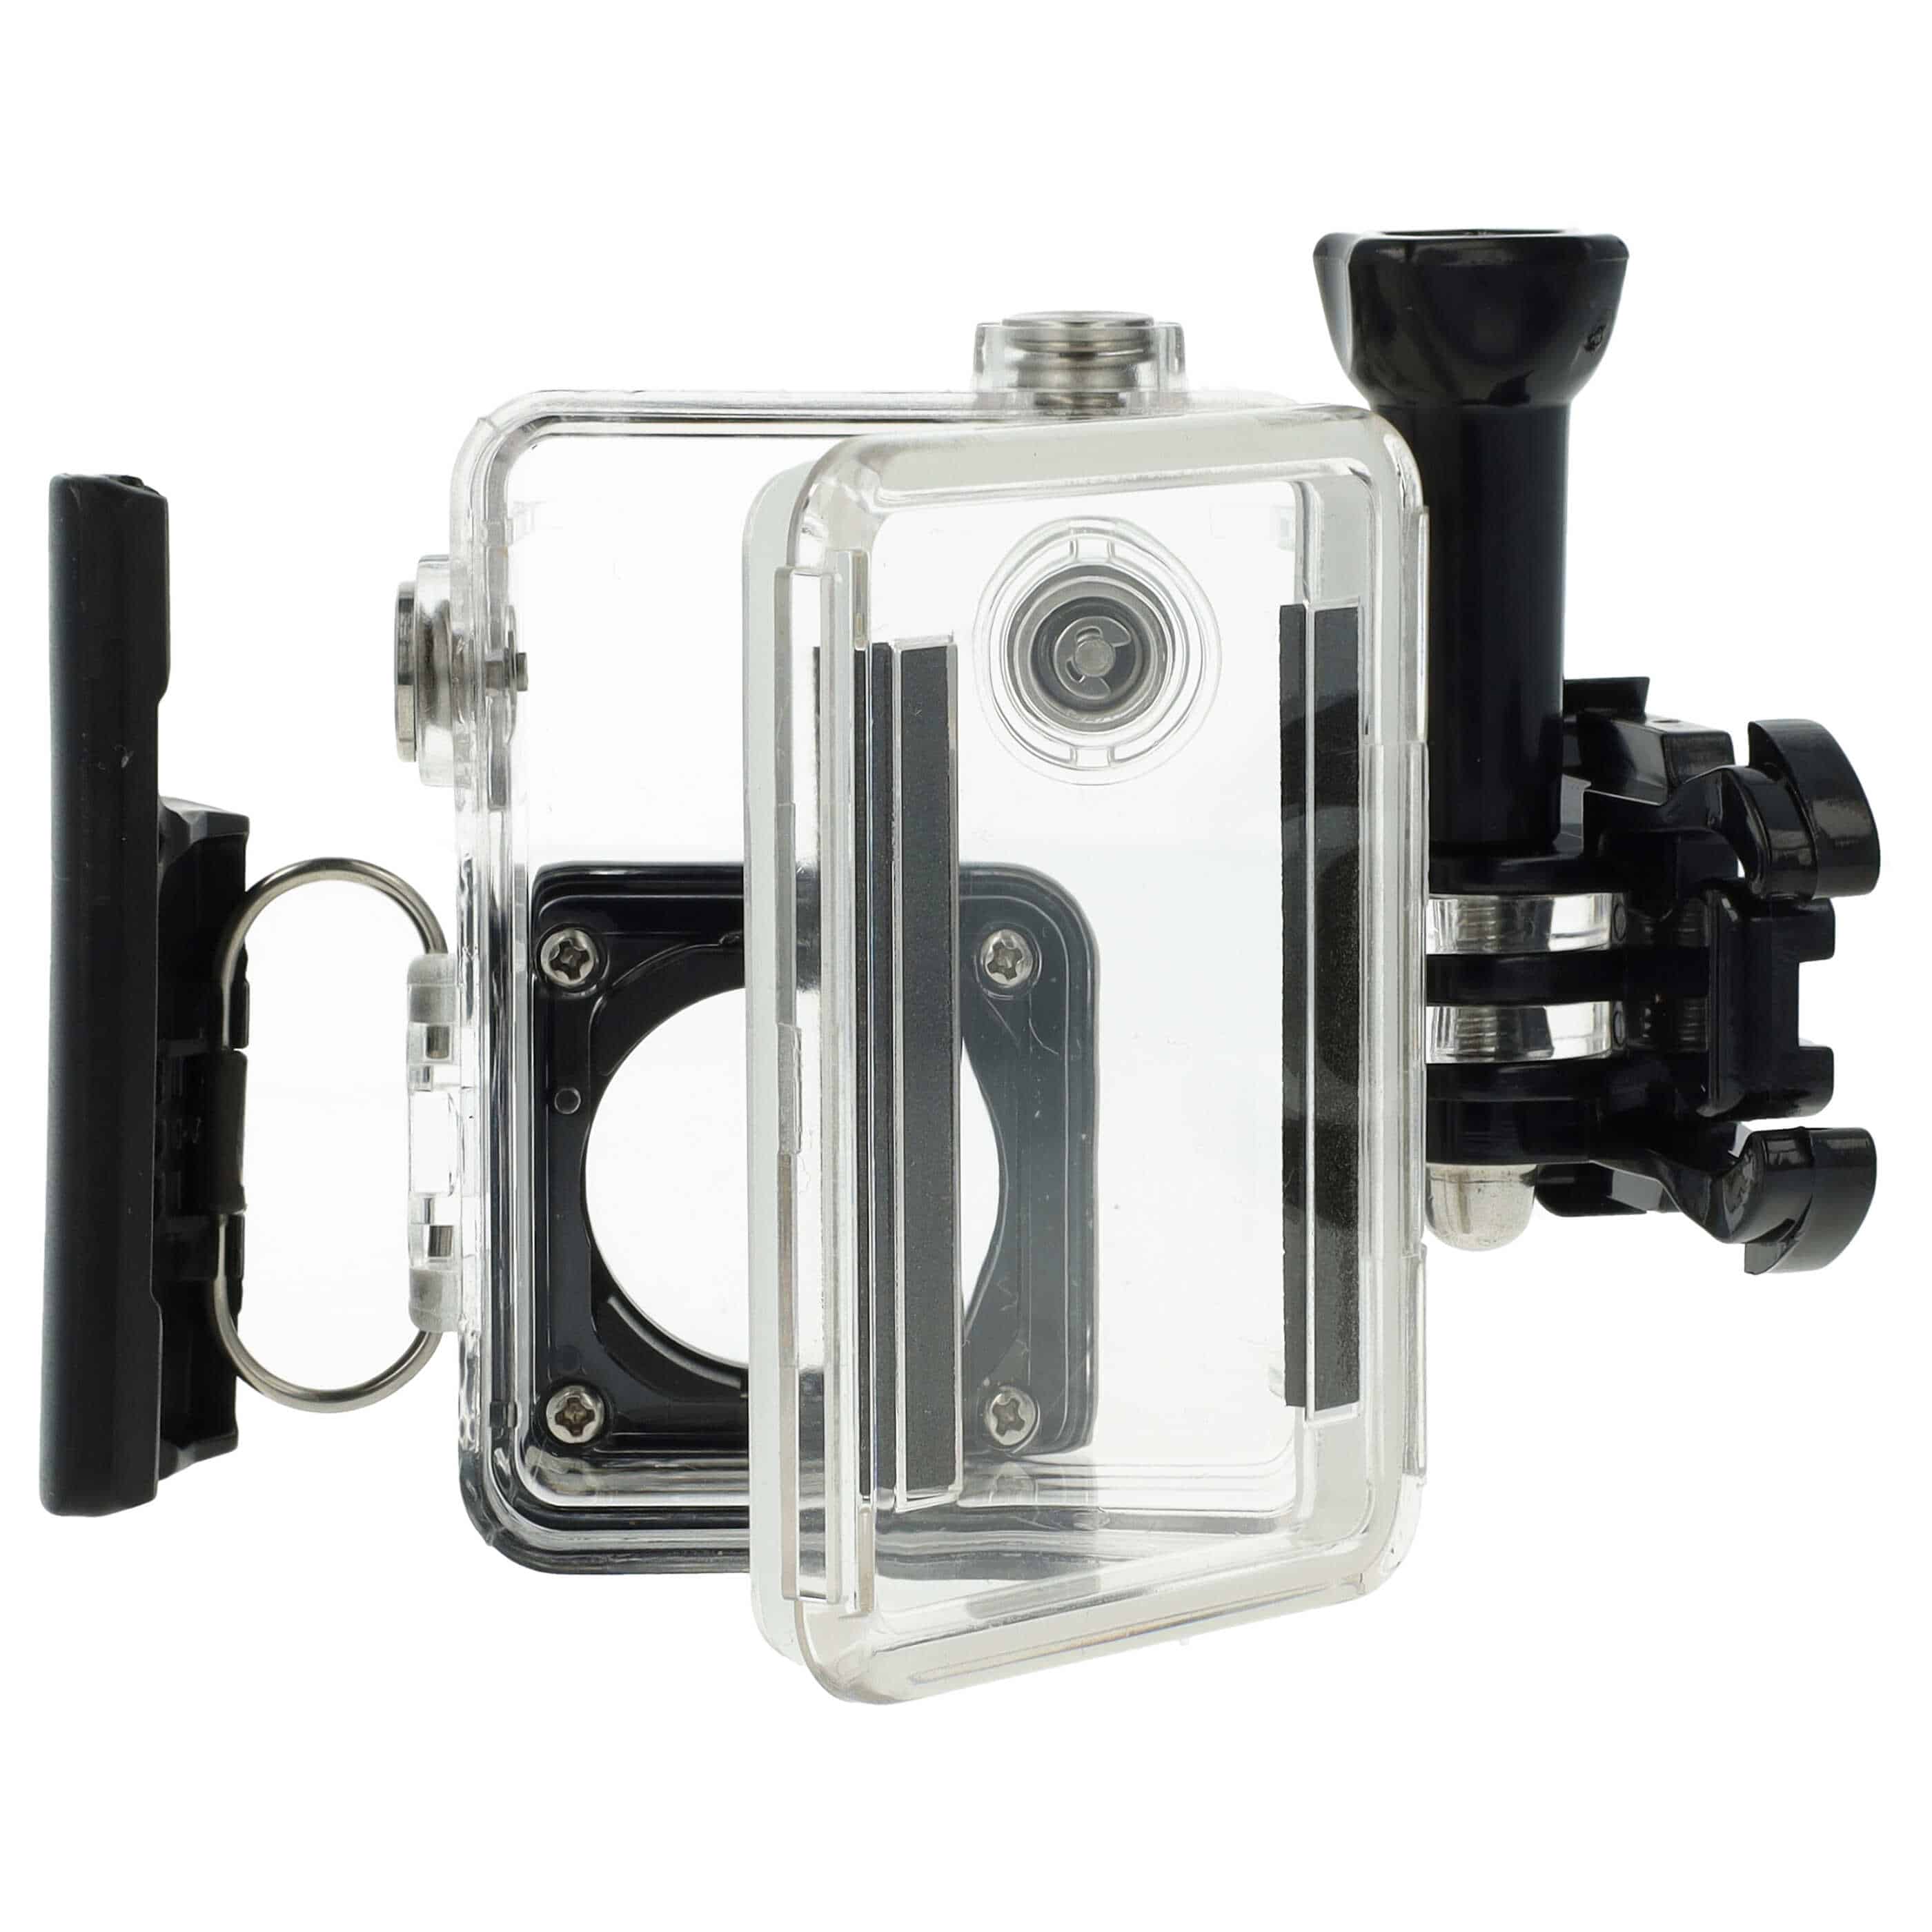 Unterwassergehäuse passend für GoPro Hero 3, 3+, 4 ActionCam - Bis max. 45 m Tiefe